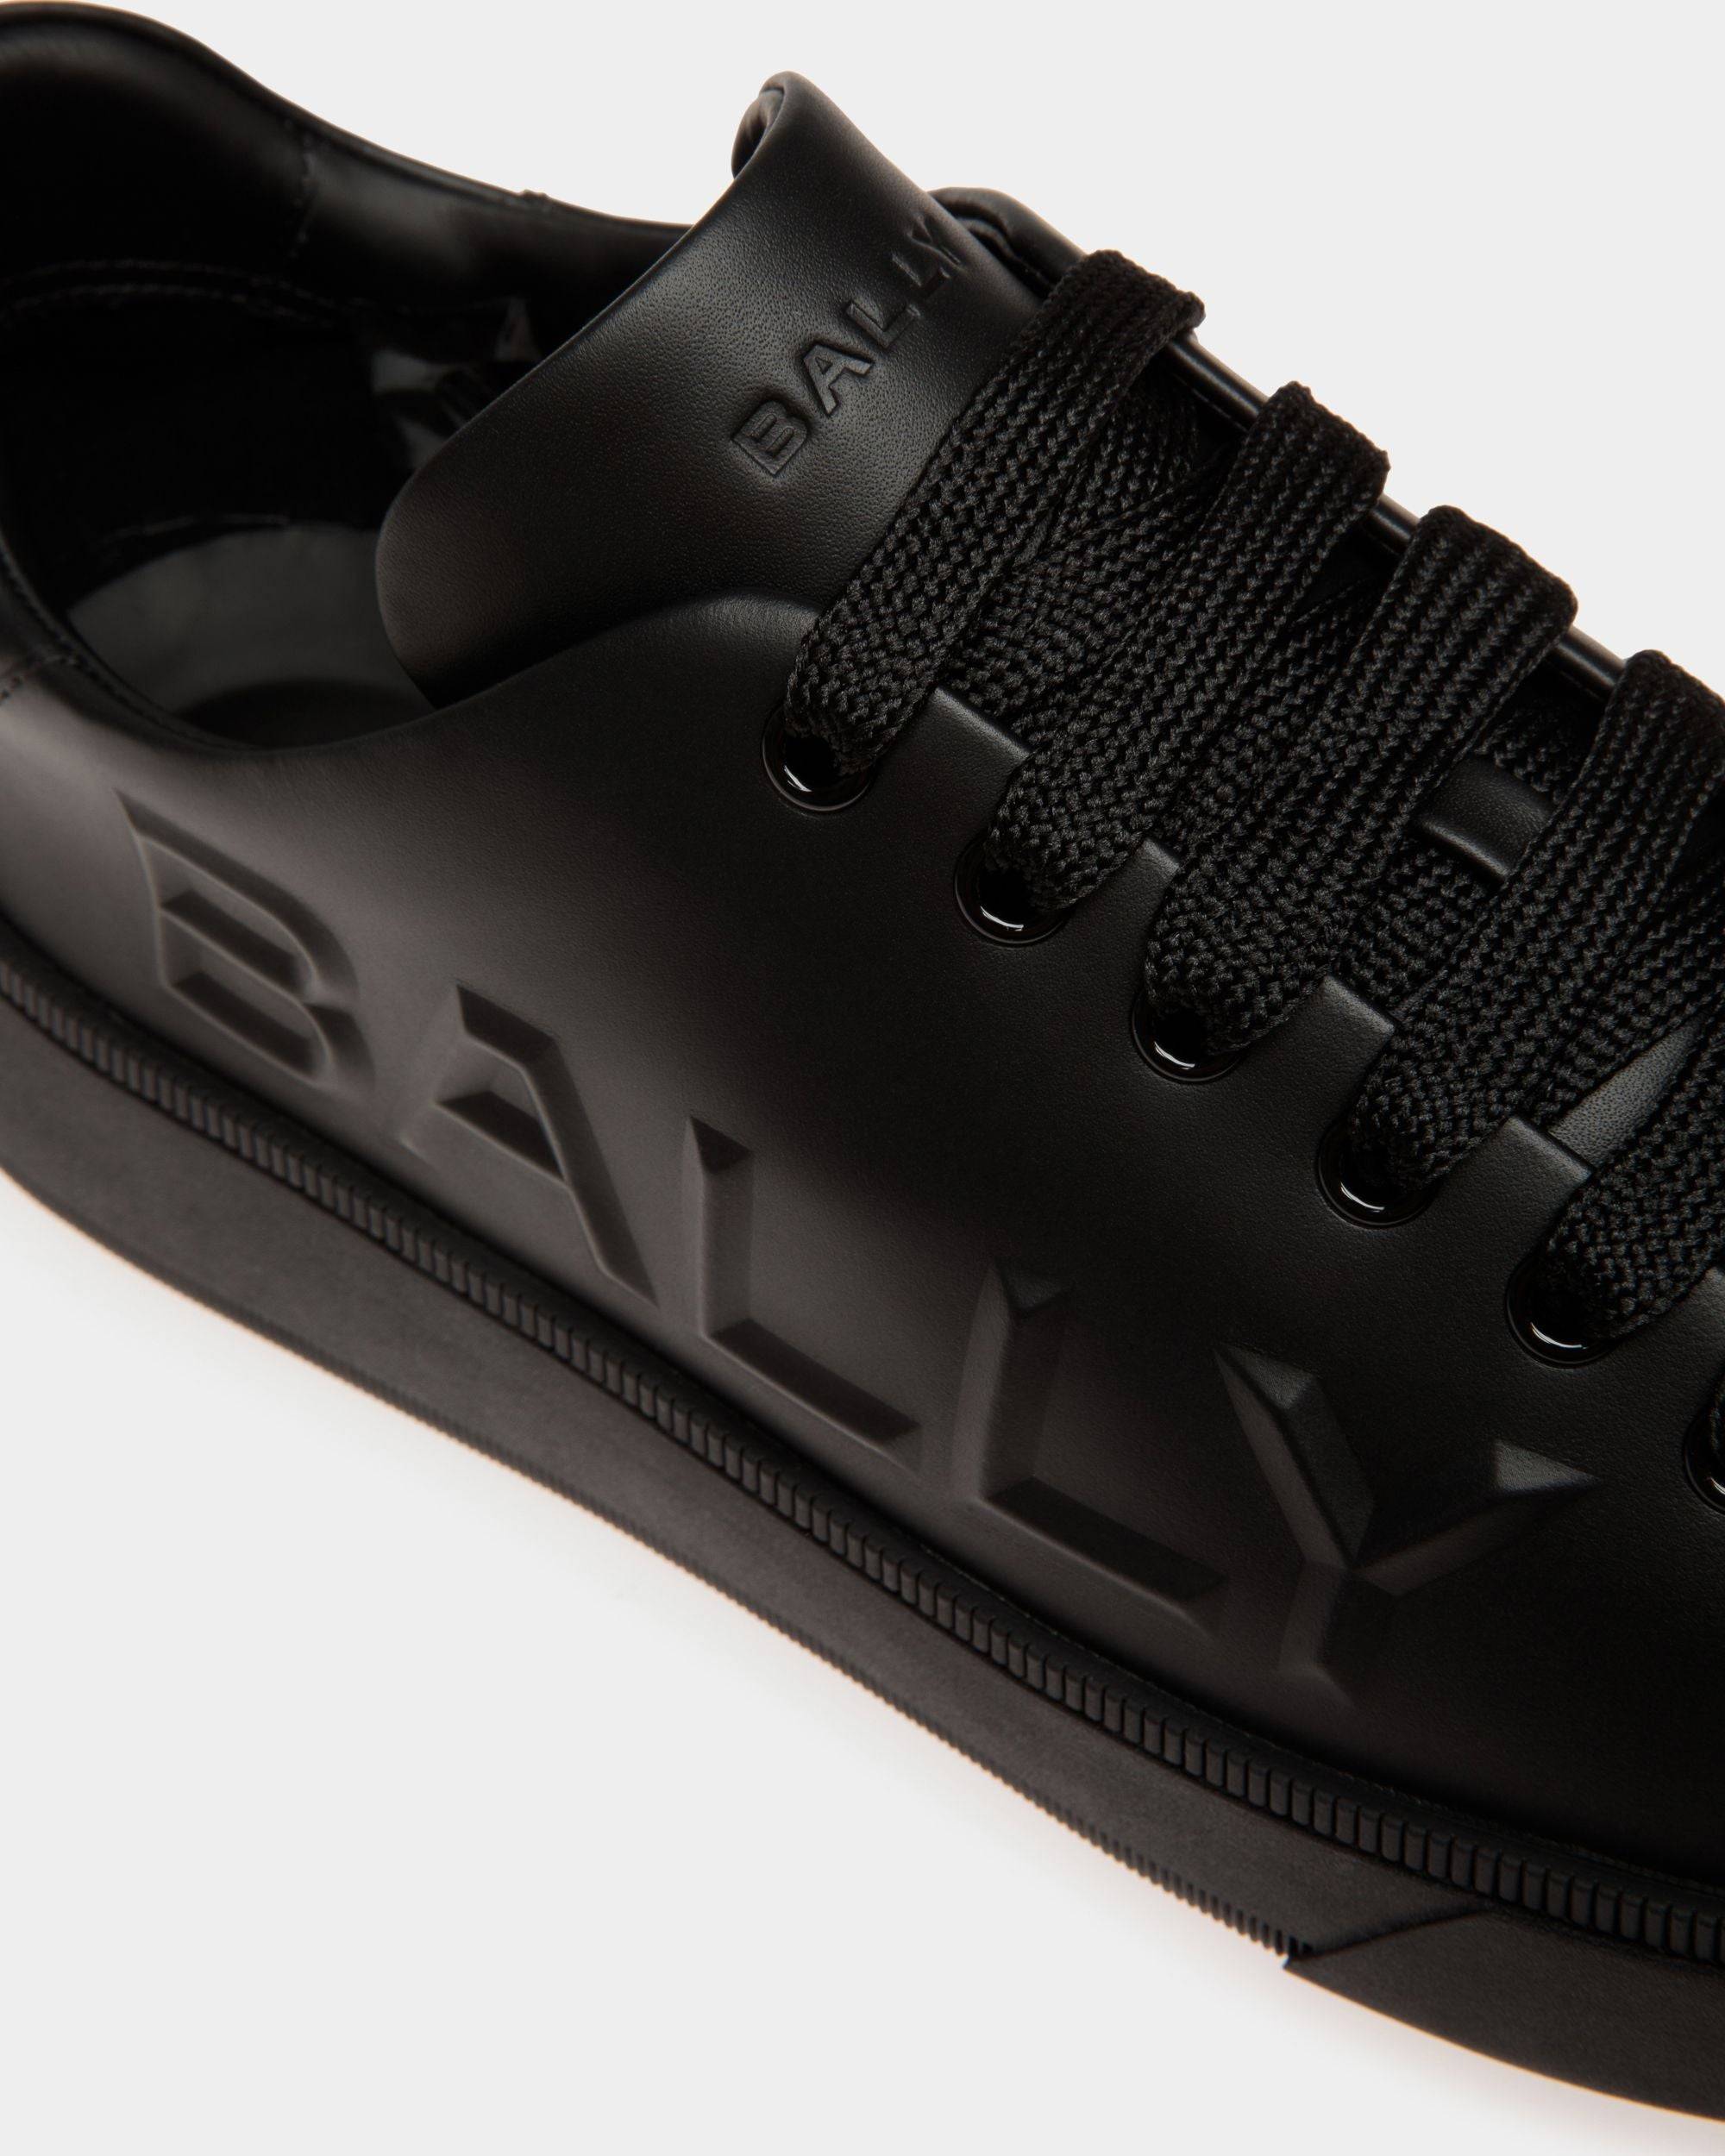 Raise | Men's Sneaker in Black Leather | Bally | Still Life Detail